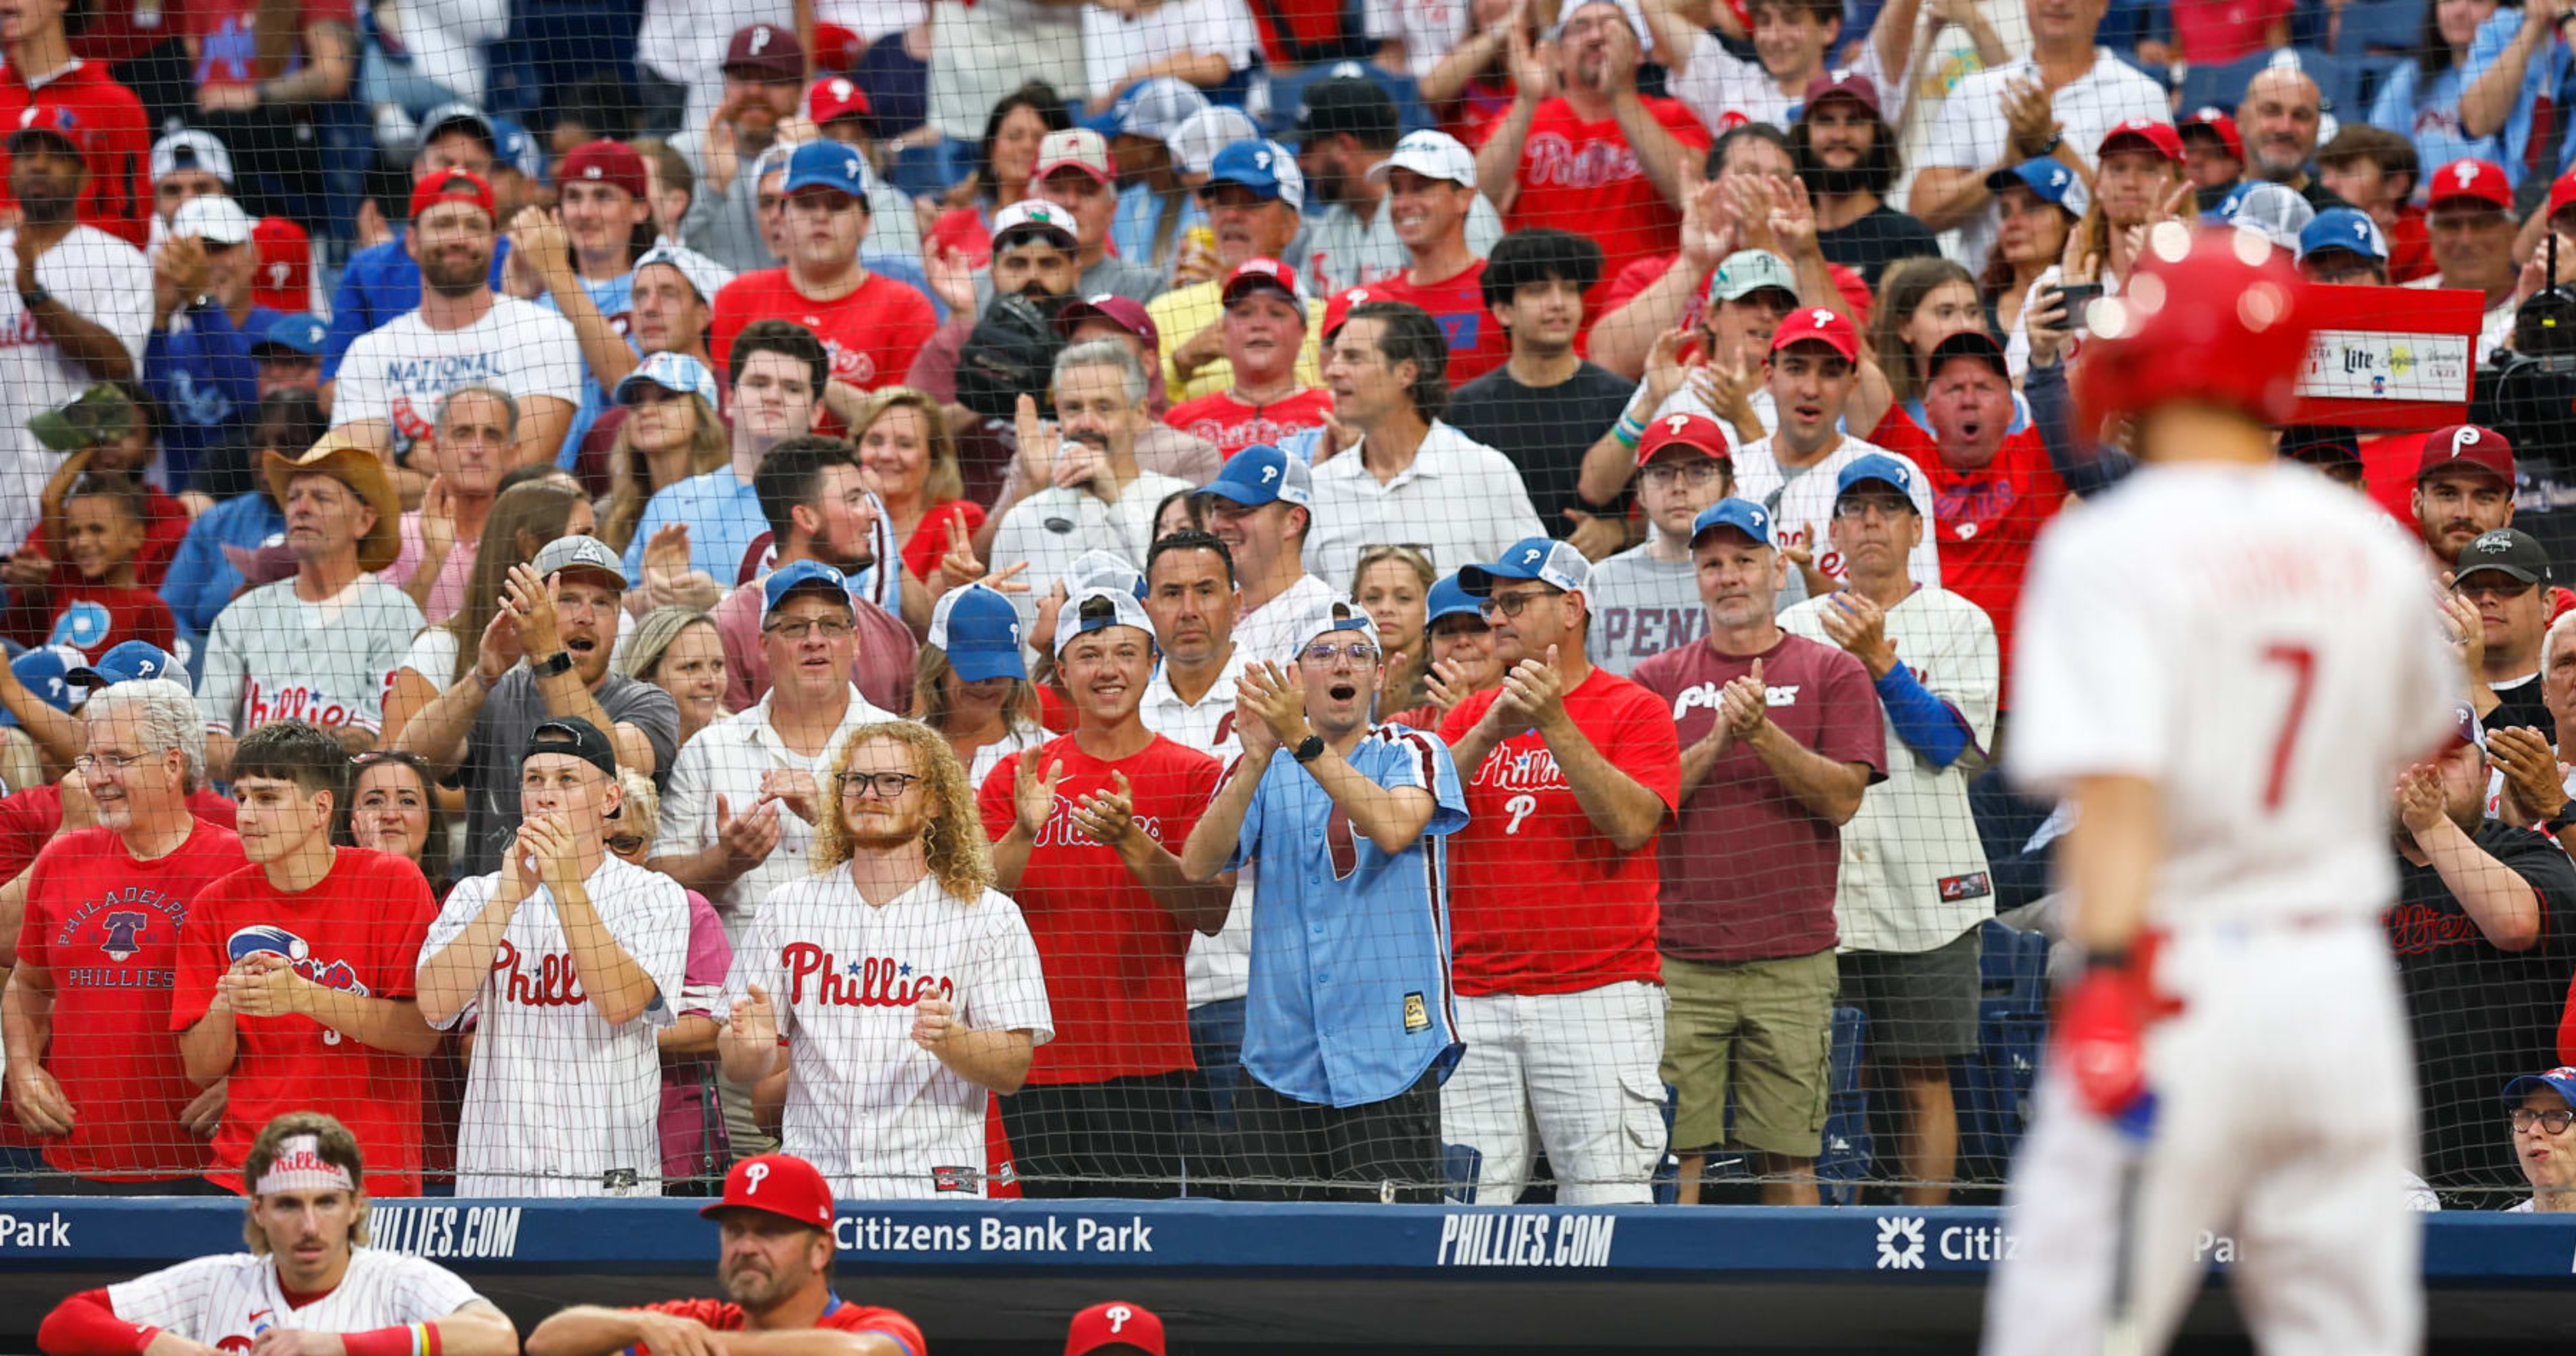 Talkin' Baseball on X: The Phillies have over $1 billion